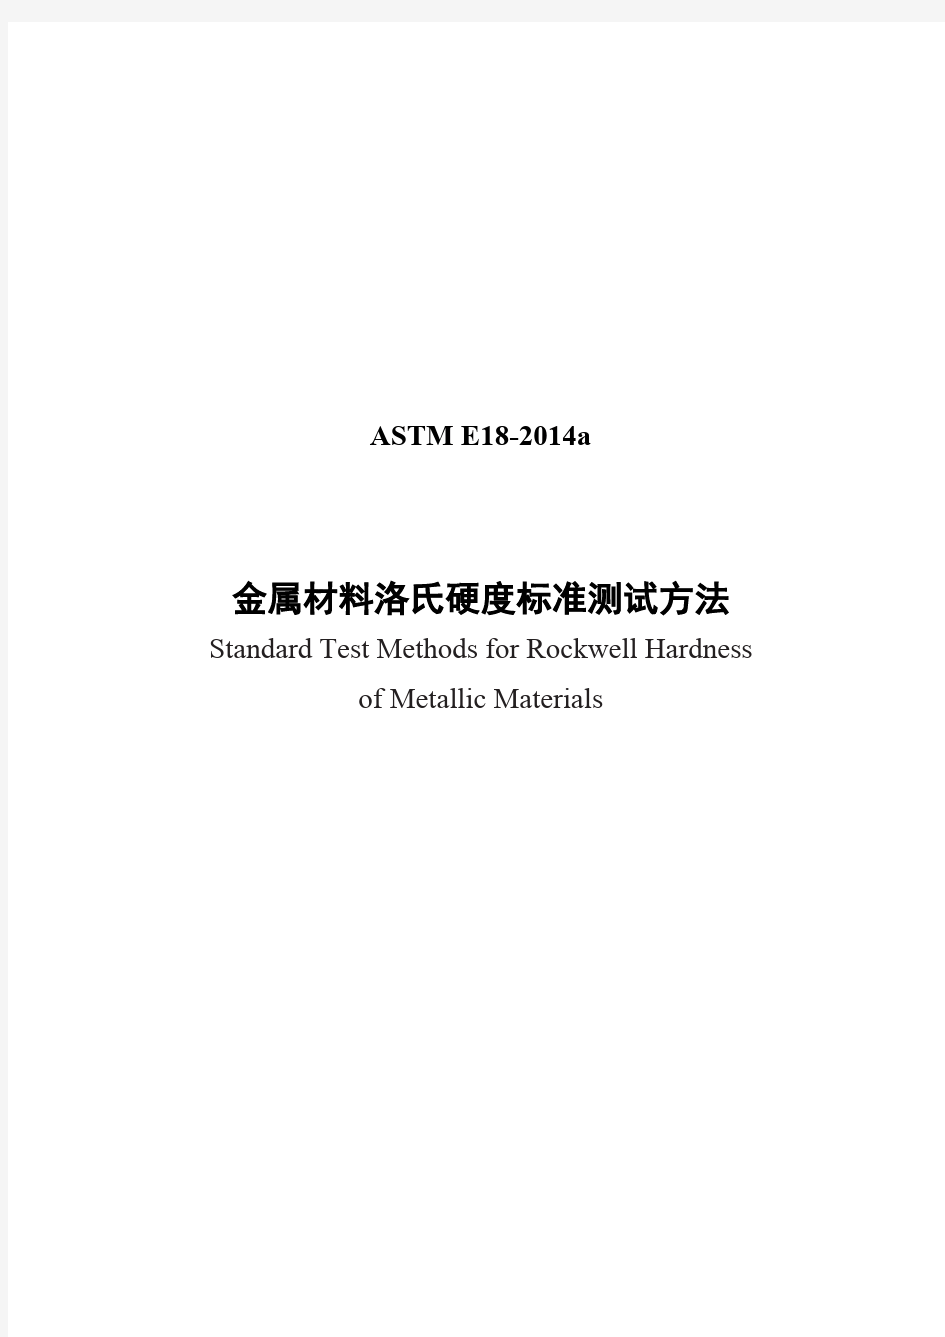 ASTM E18-14a金属材料洛氏硬度标准测试方法-中文版